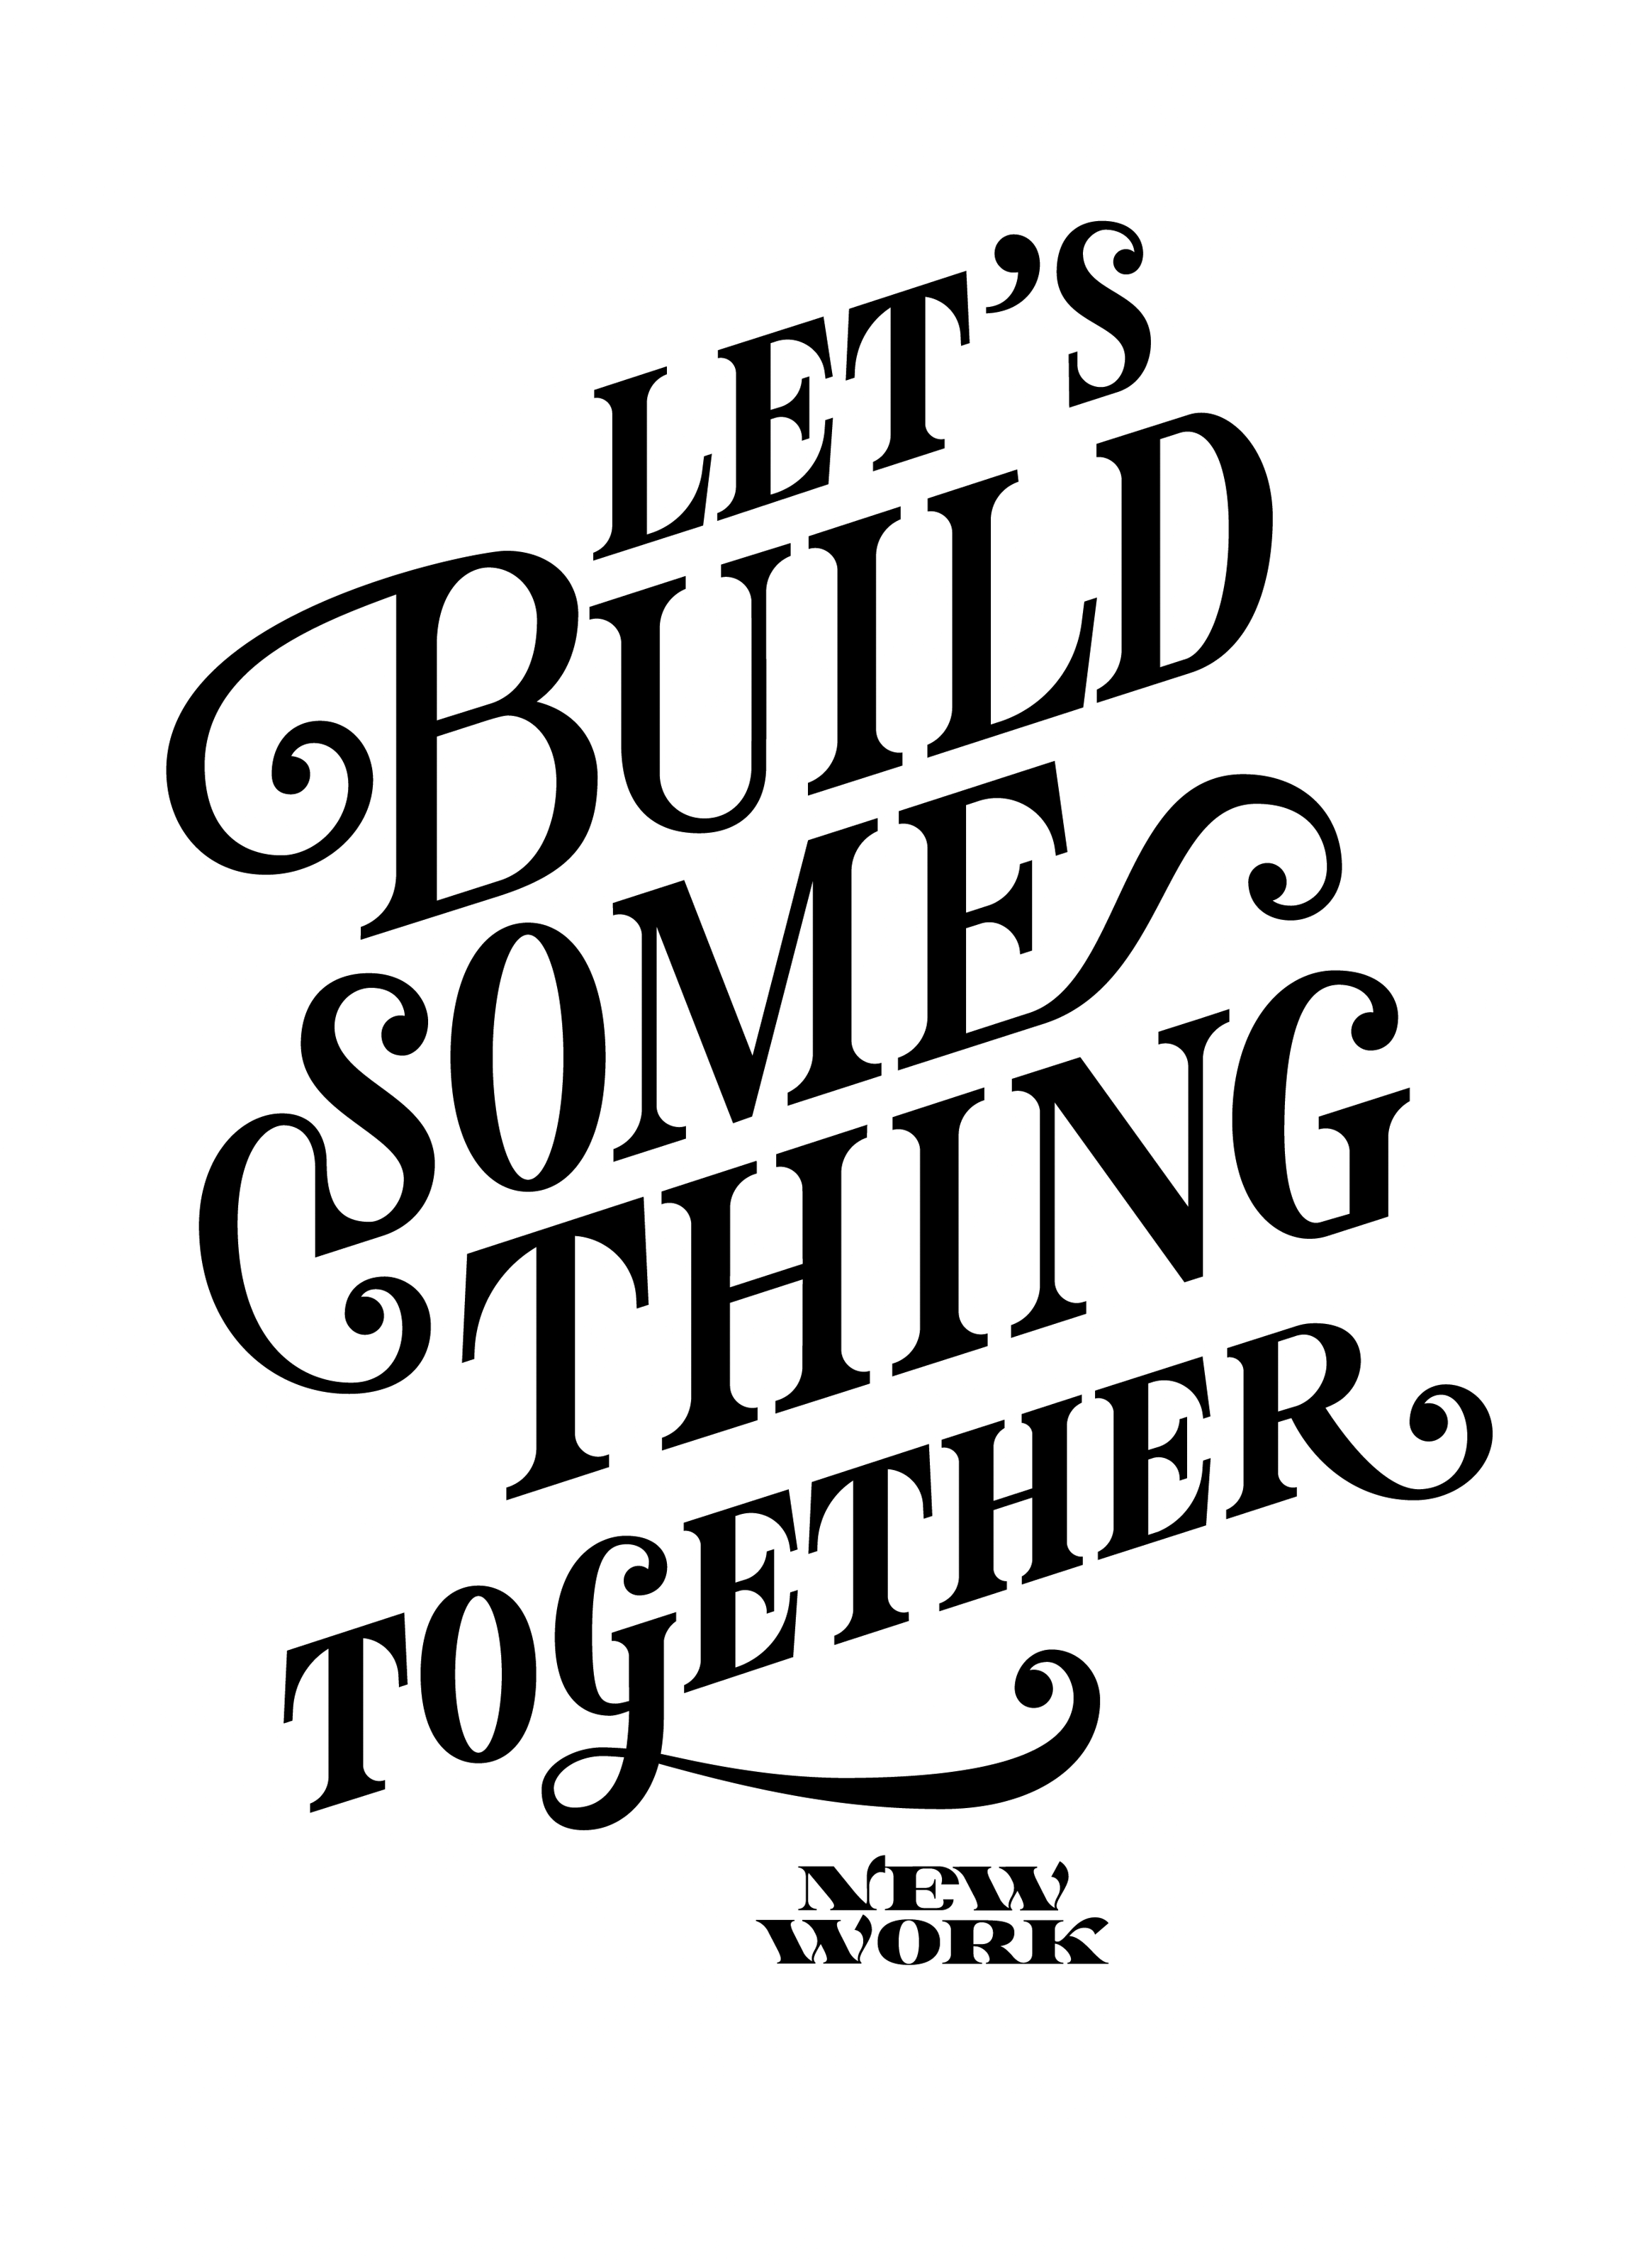 Ein Schriftzug (schwarz auf weiß) mit dem englischen Wortlaut: “Let’s build something together” (Lass uns zusammen etwas aufbauen), in Serifenschrift.